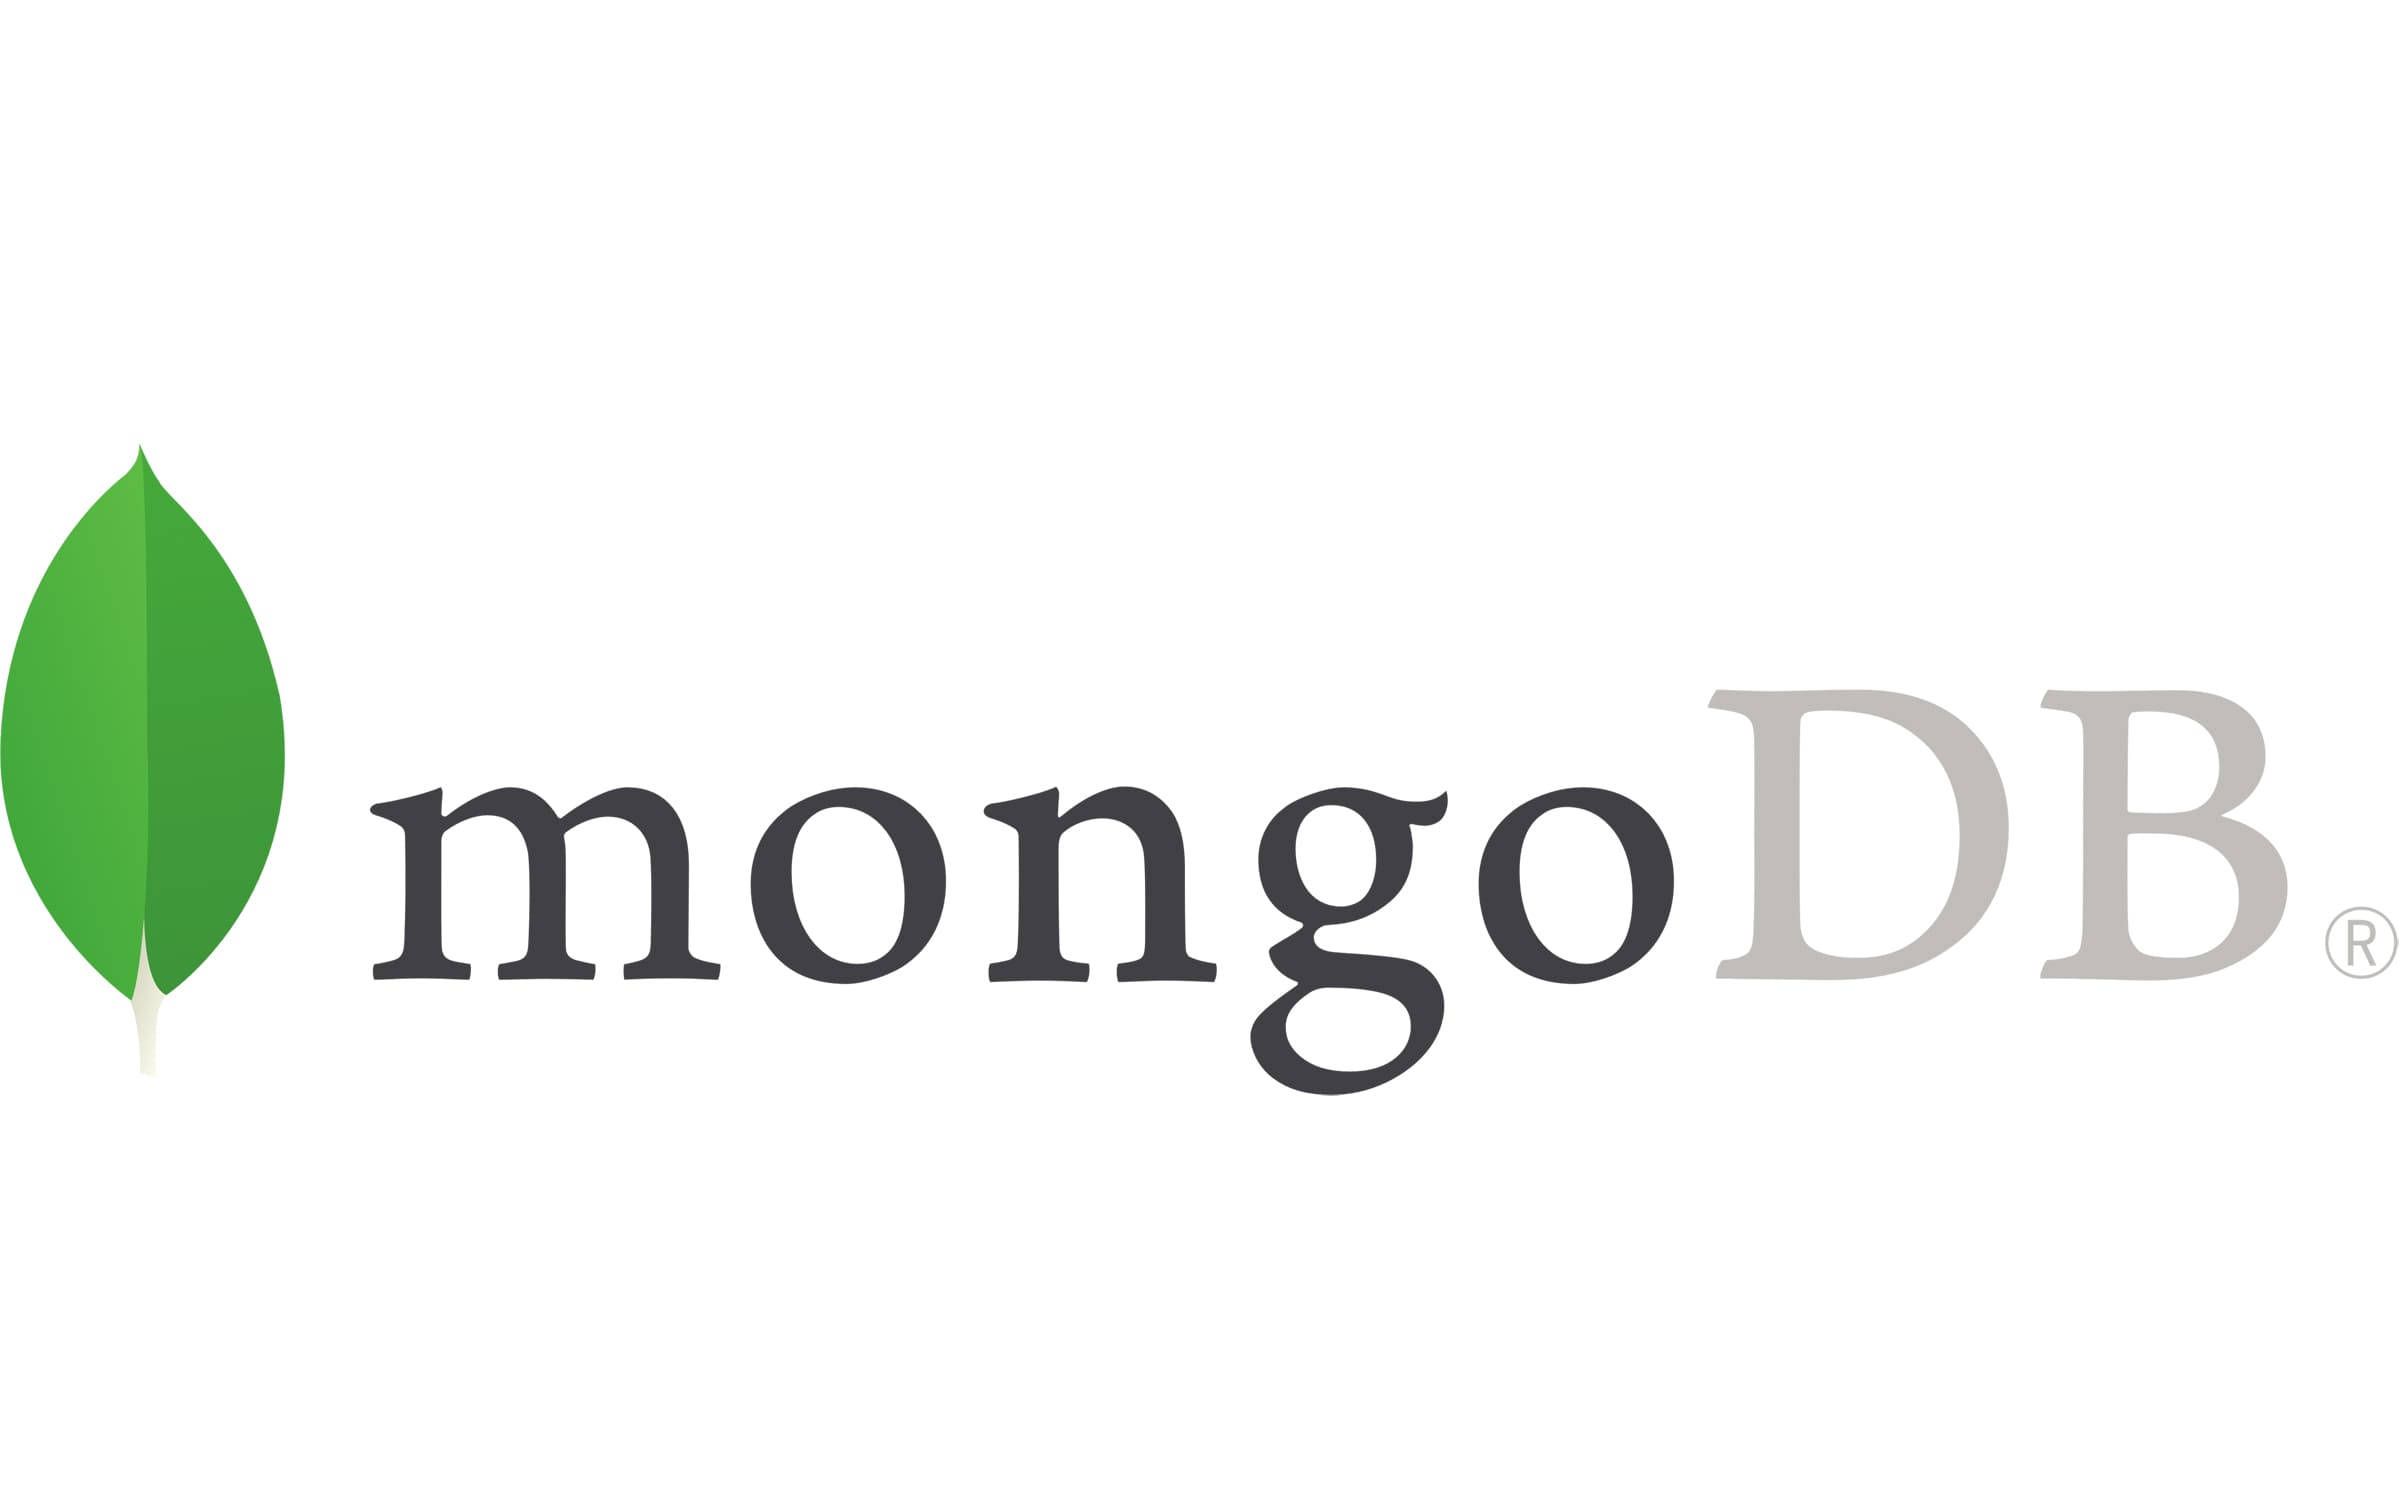 Python Spark MongoDB: MongoDB Logo